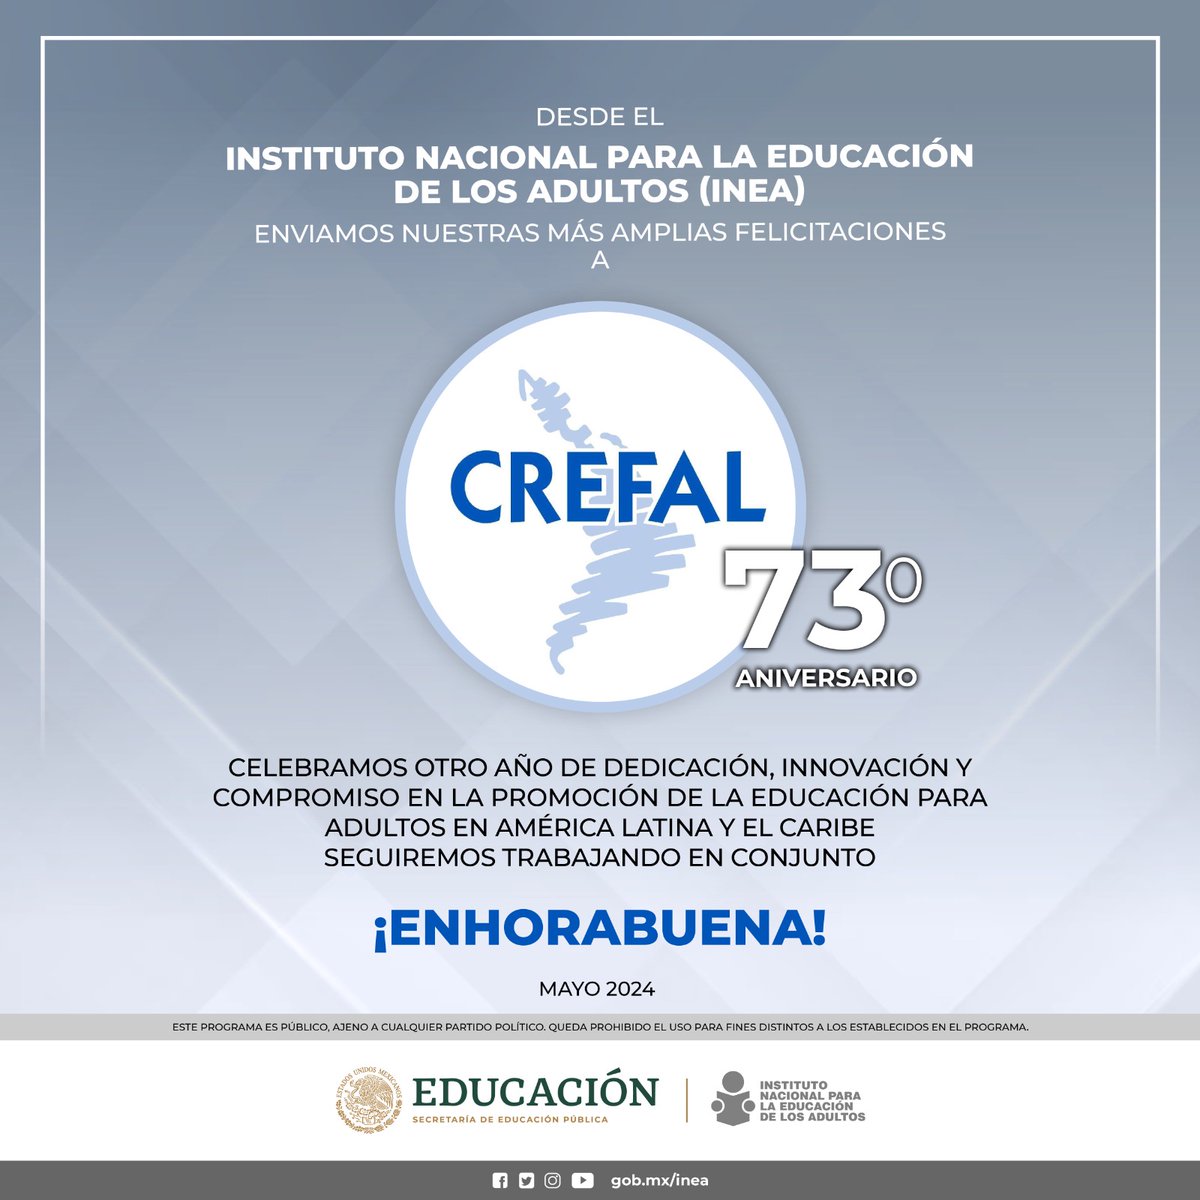 🎉 Hoy celebramos el 73° aniversario del @CREFAL_Oficial, un referente en la cooperación regional para la educación de adultos en América Latina y El Caribe. ¡Felicitaciones por su invaluable labor en la formación y el desarrollo educativo de nuestra región! 📘🌎